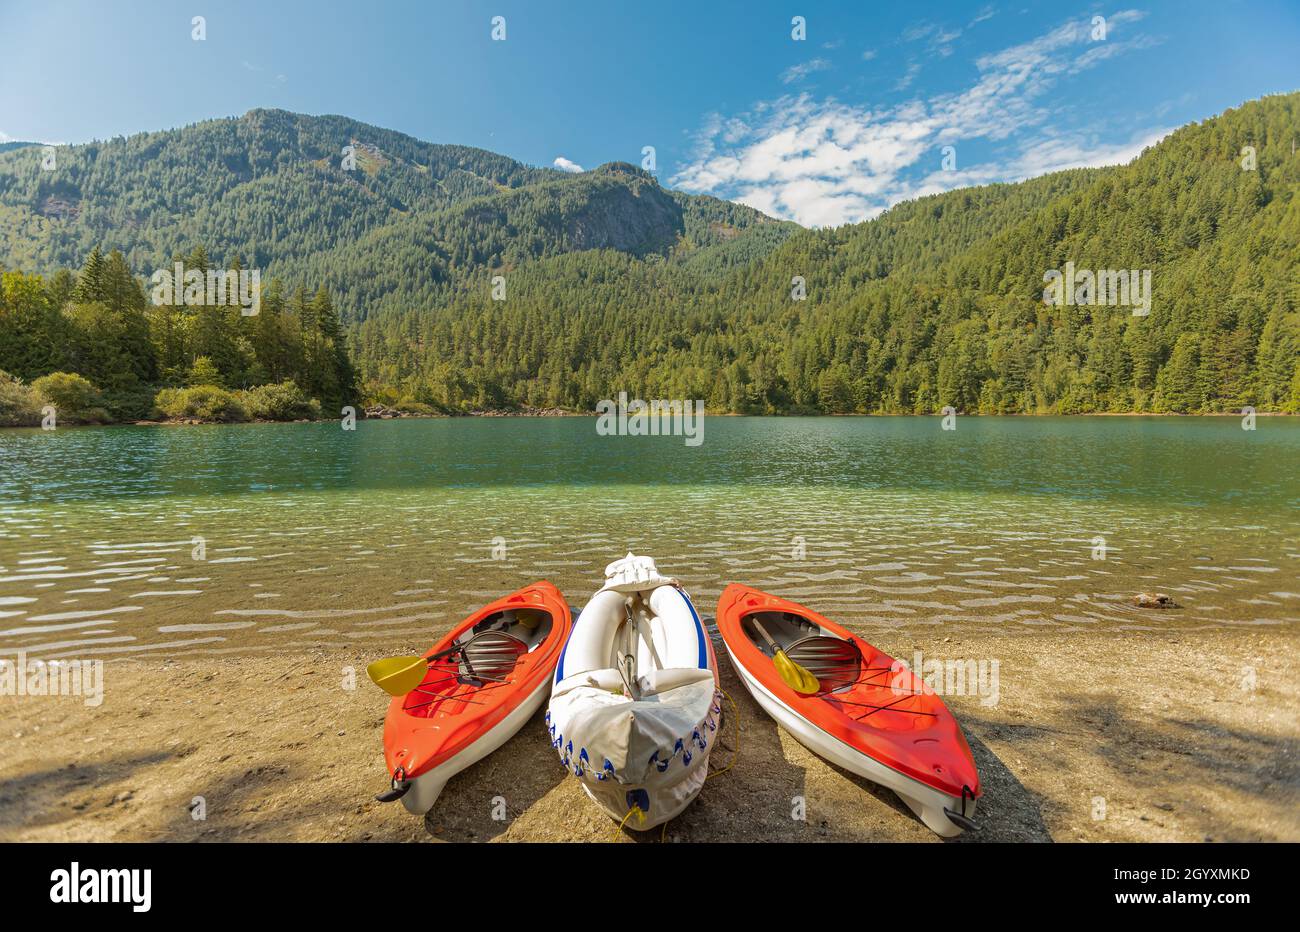 Trois canots ou bateaux colorés sur une rive d'un beau lac dans un parc.Colombie-Britannique, Canada.Photo de voyage, personne, mise au point sélective, concept phot Banque D'Images